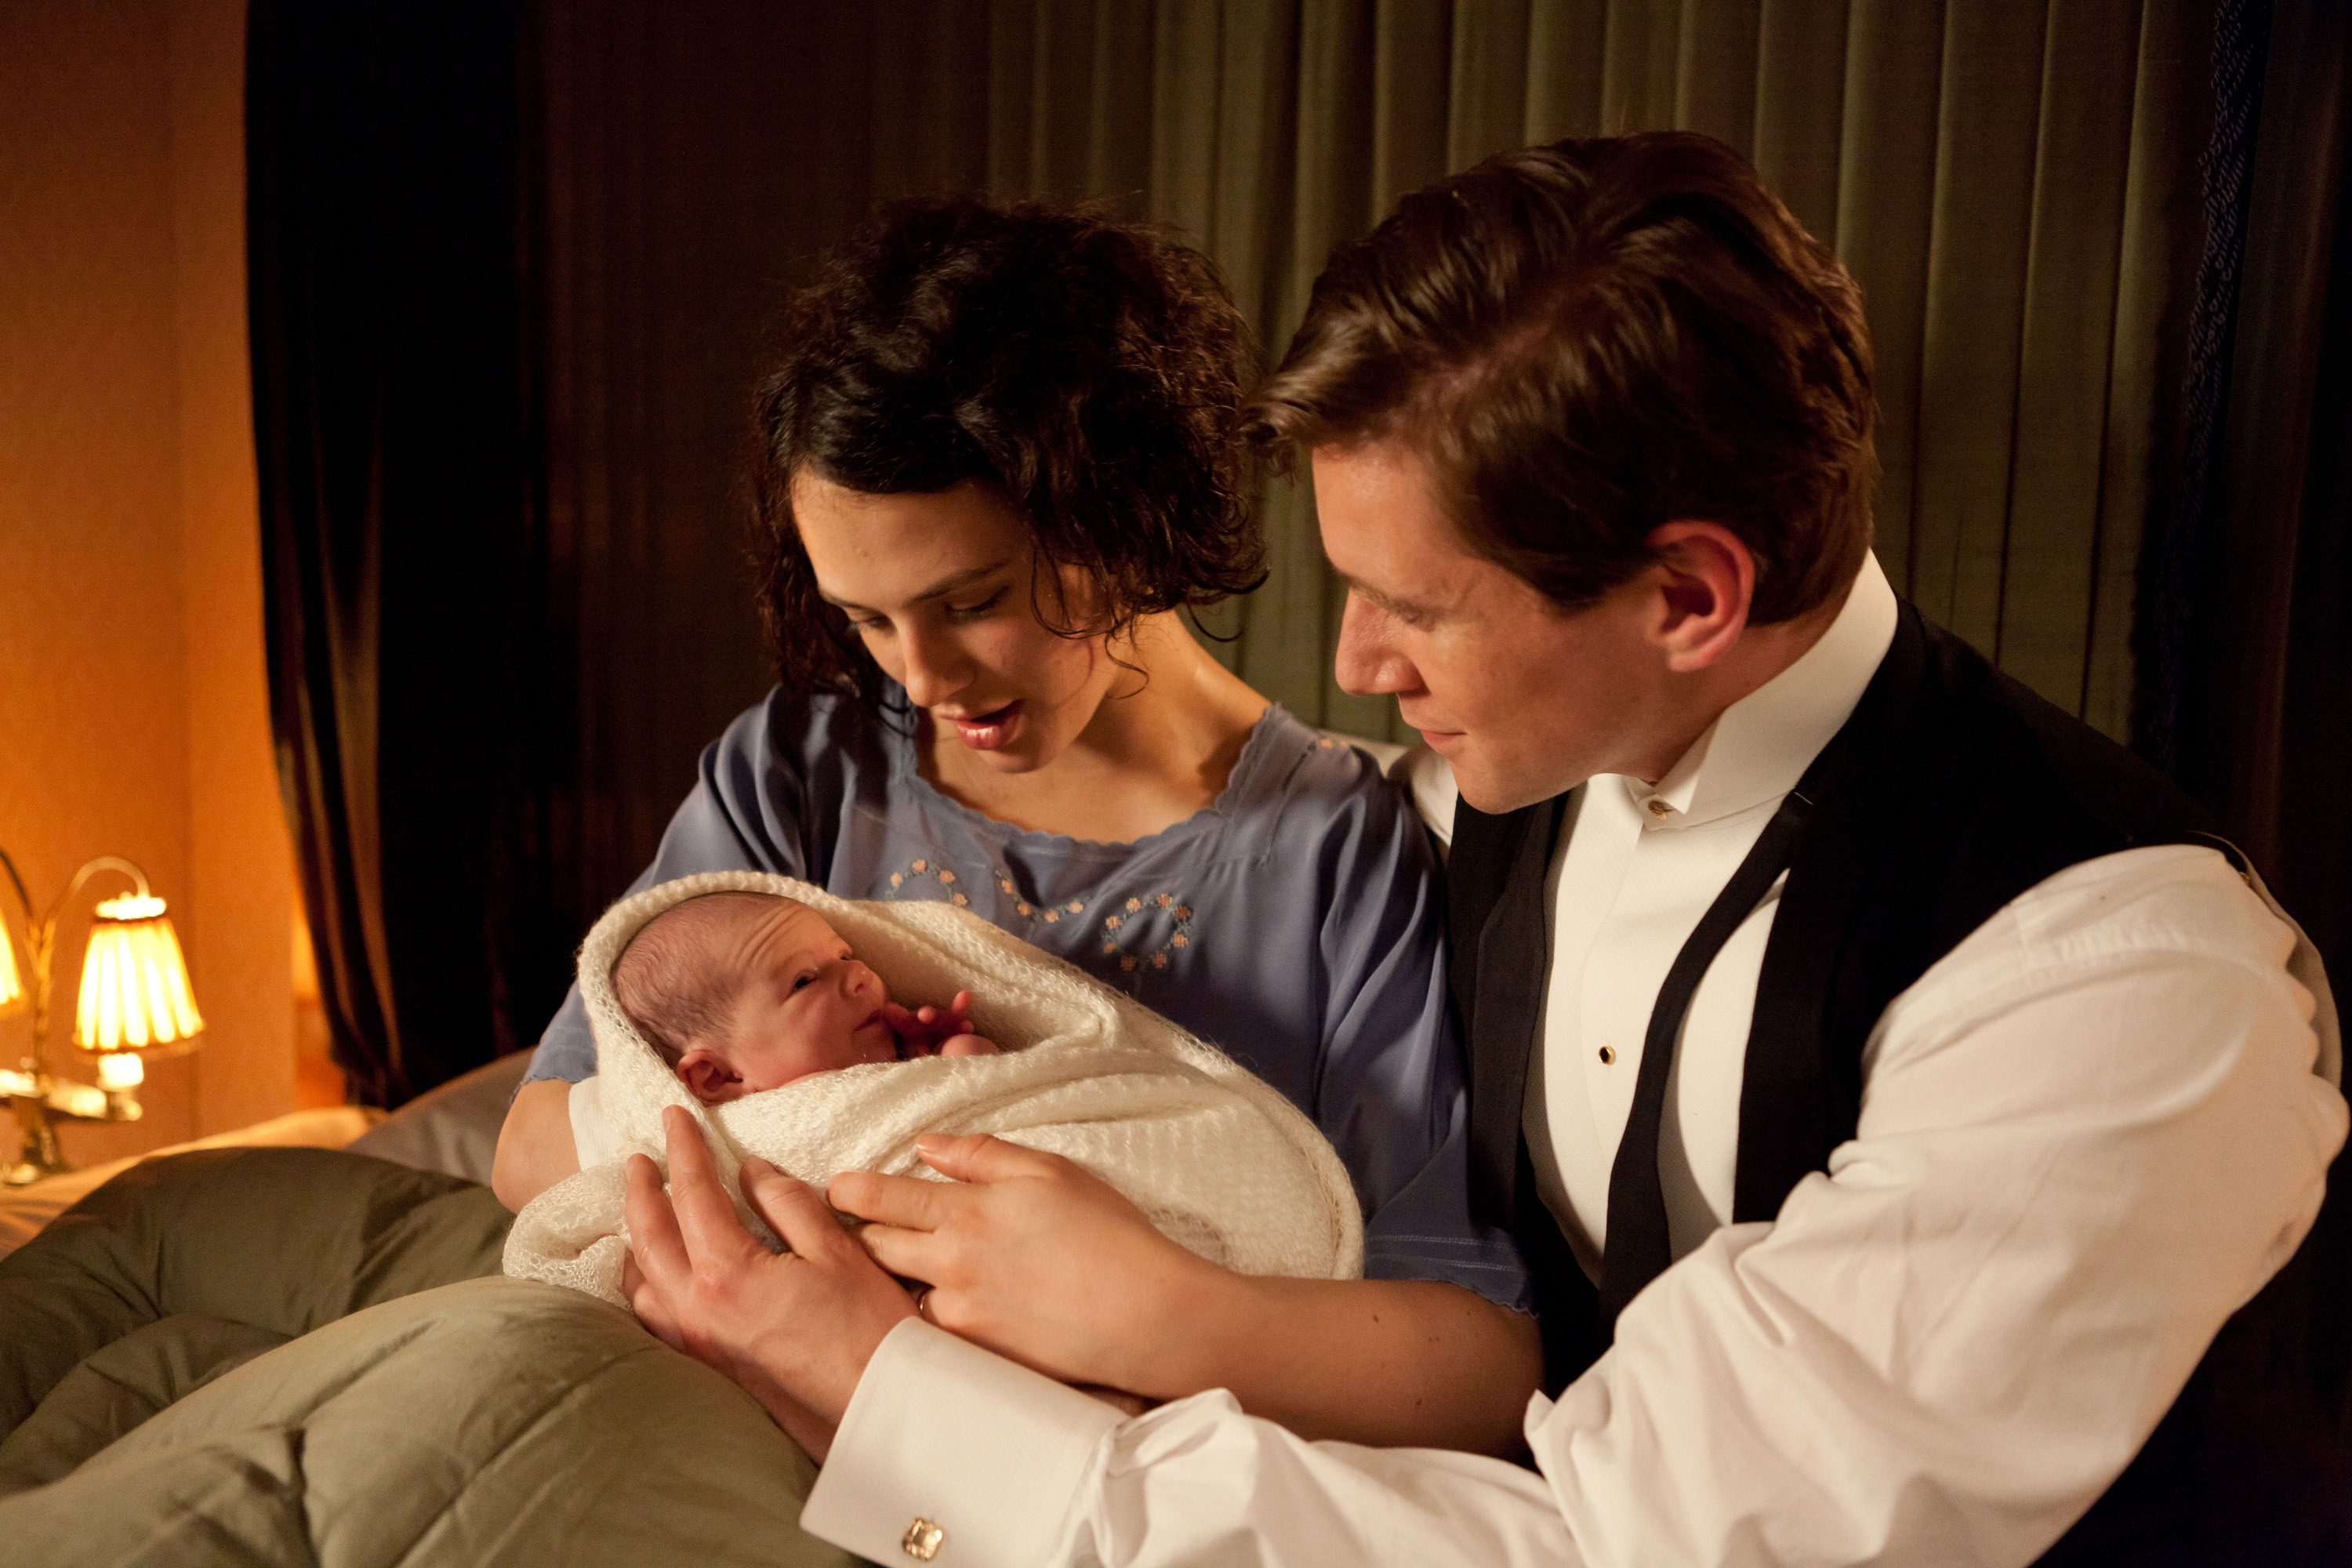 Sybil holding her baby beside Tom